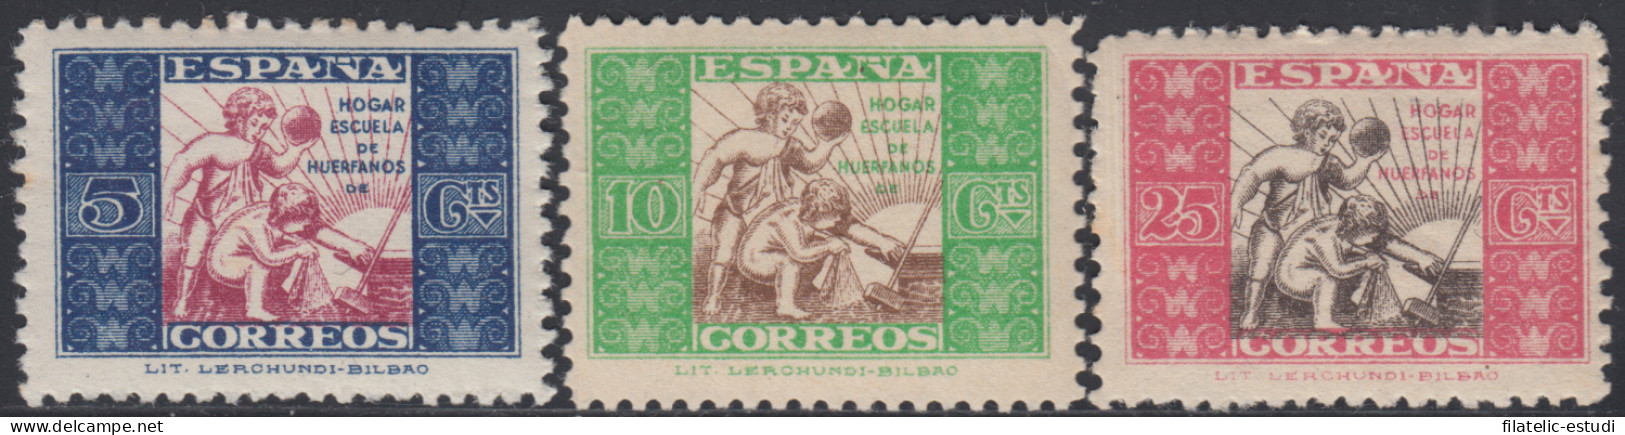 España Spain Beneficencia Huérfanos Correos 9/11 1937 Infancia MH - Beneficenza